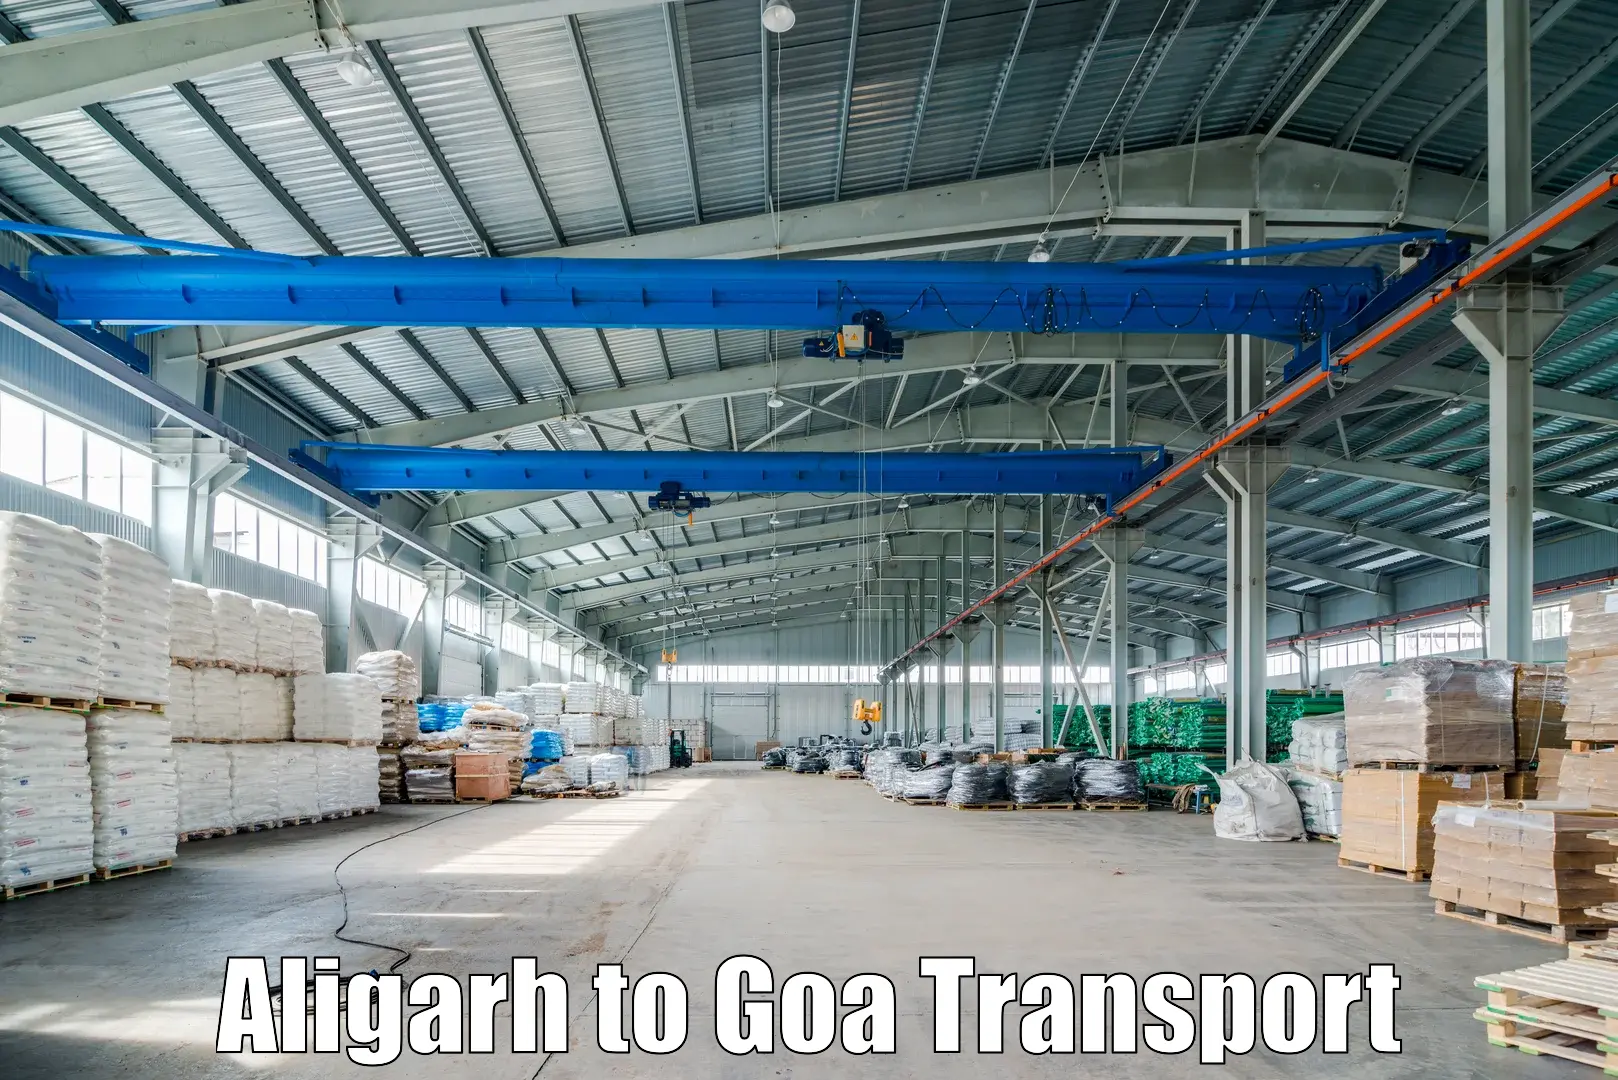 Lorry transport service Aligarh to Panaji